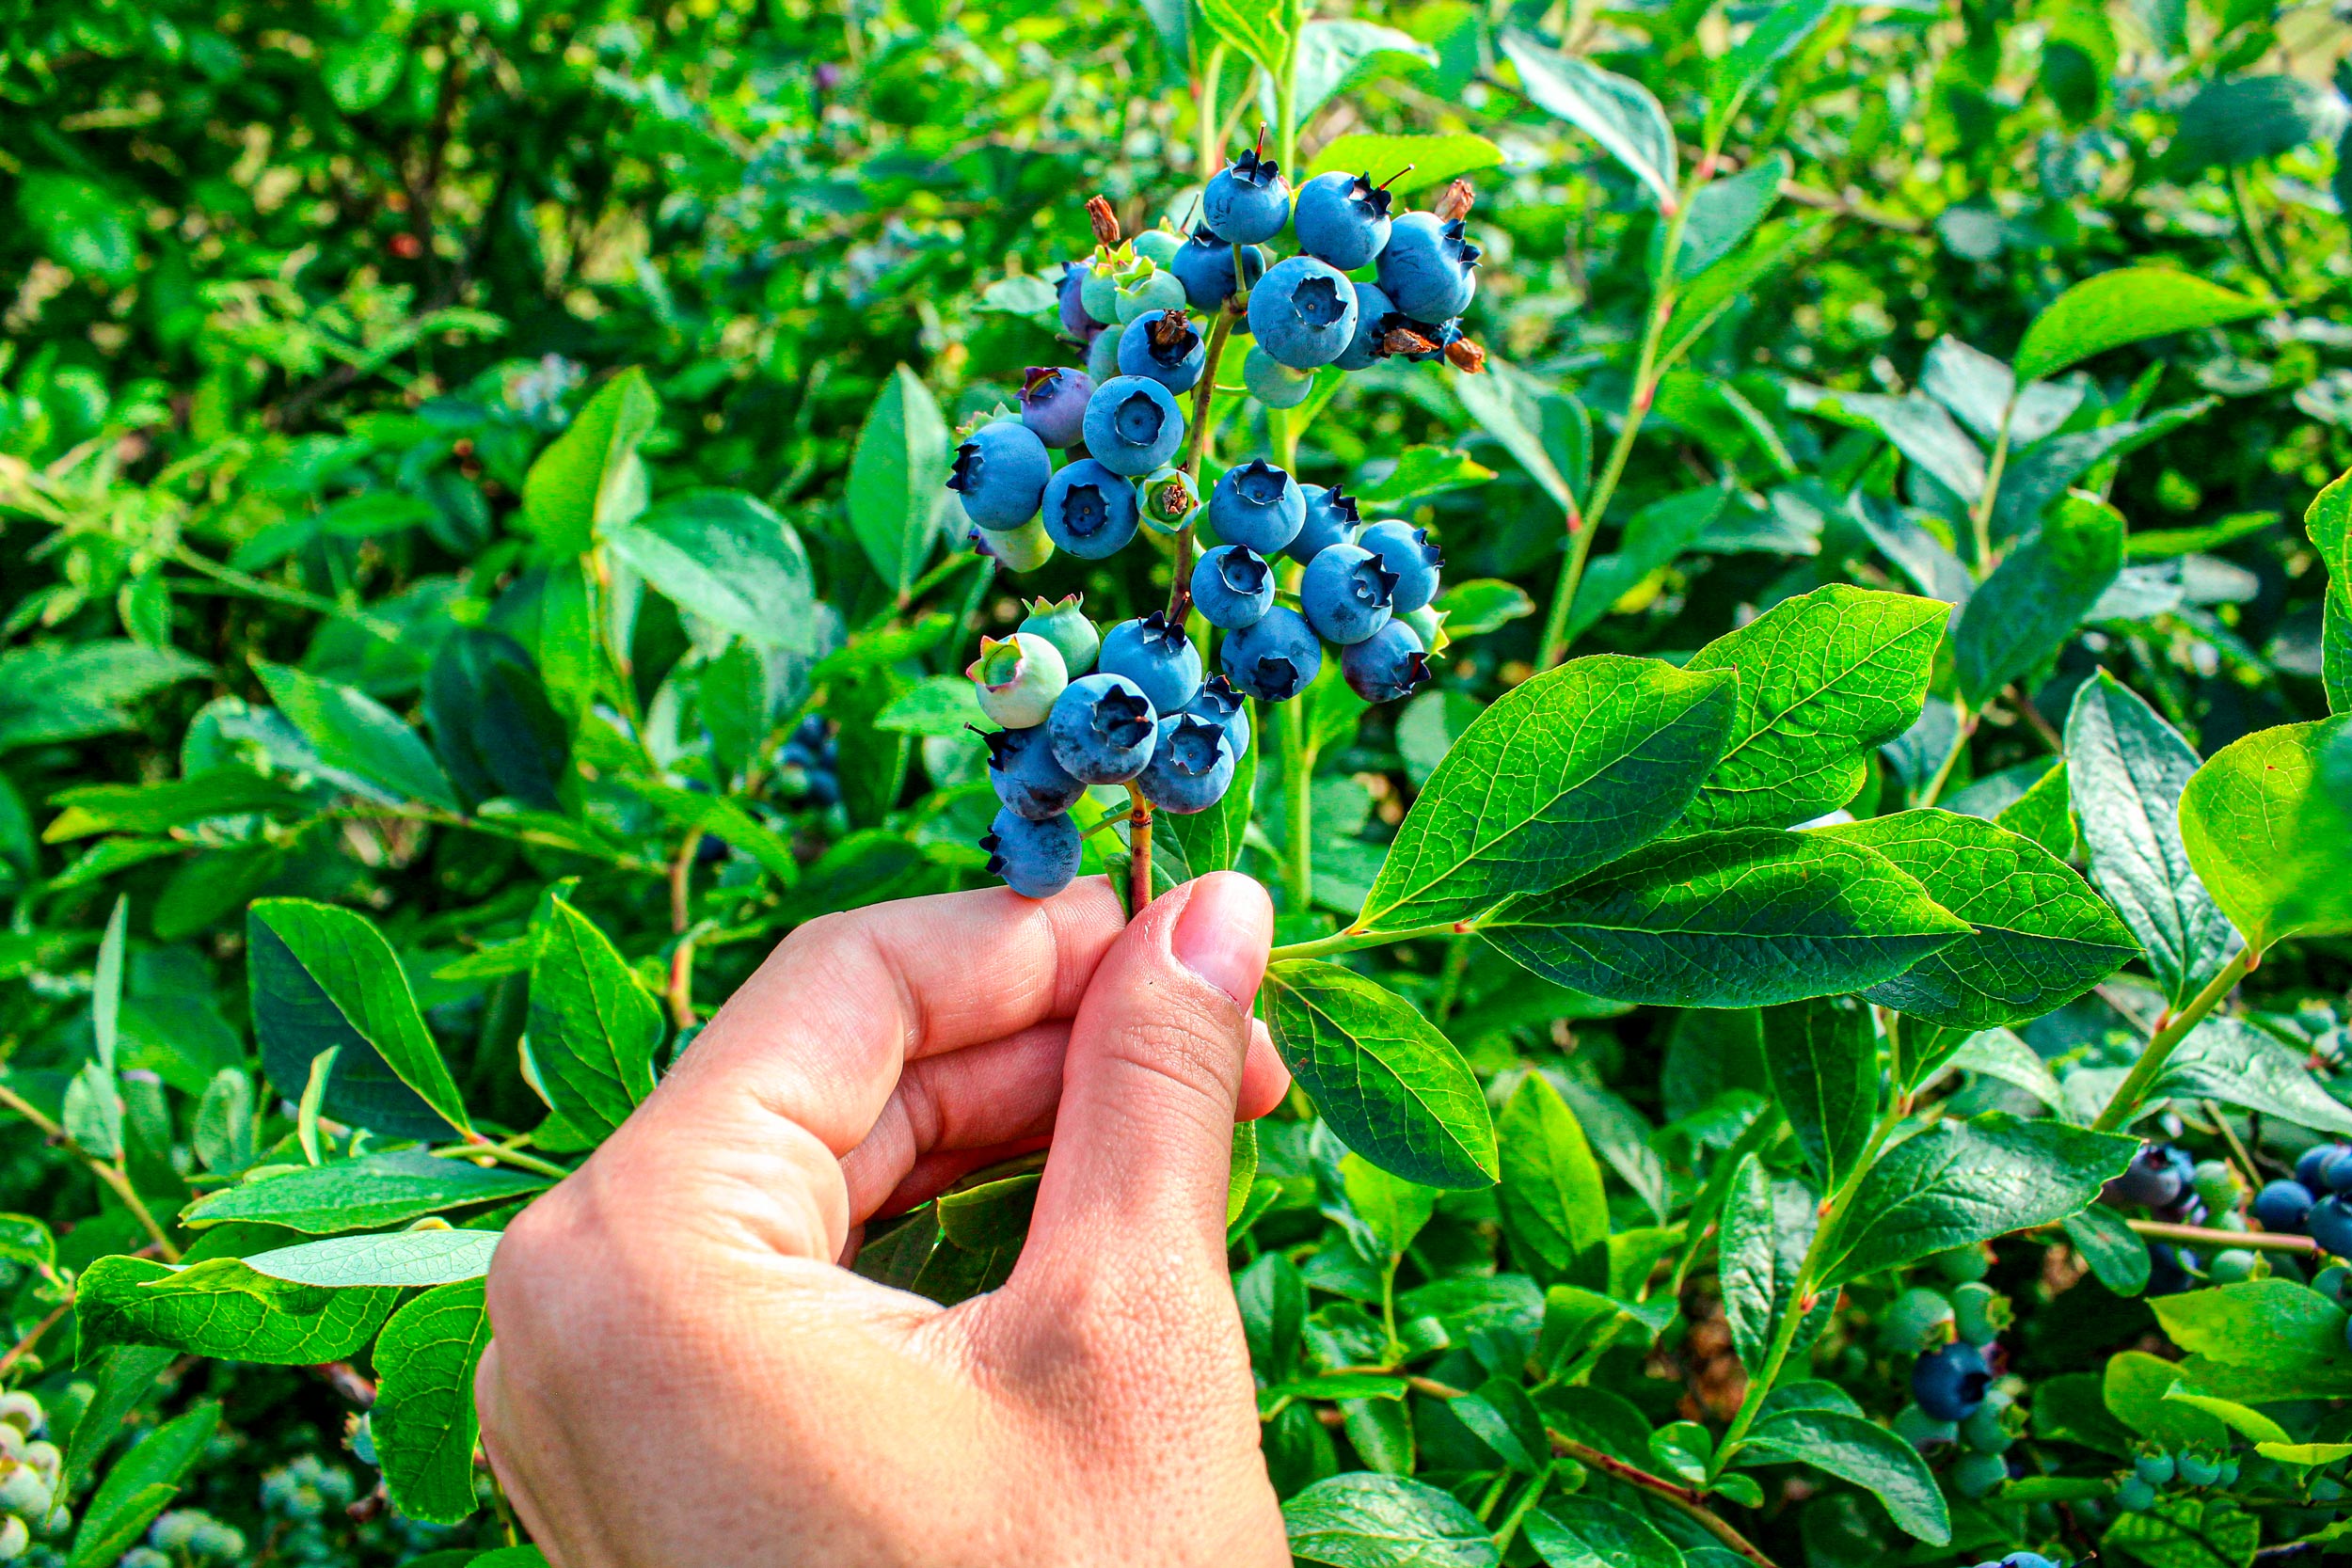 Ripe-blueberries-on-the-bush-in-her-hand-shutterstockb.jpg